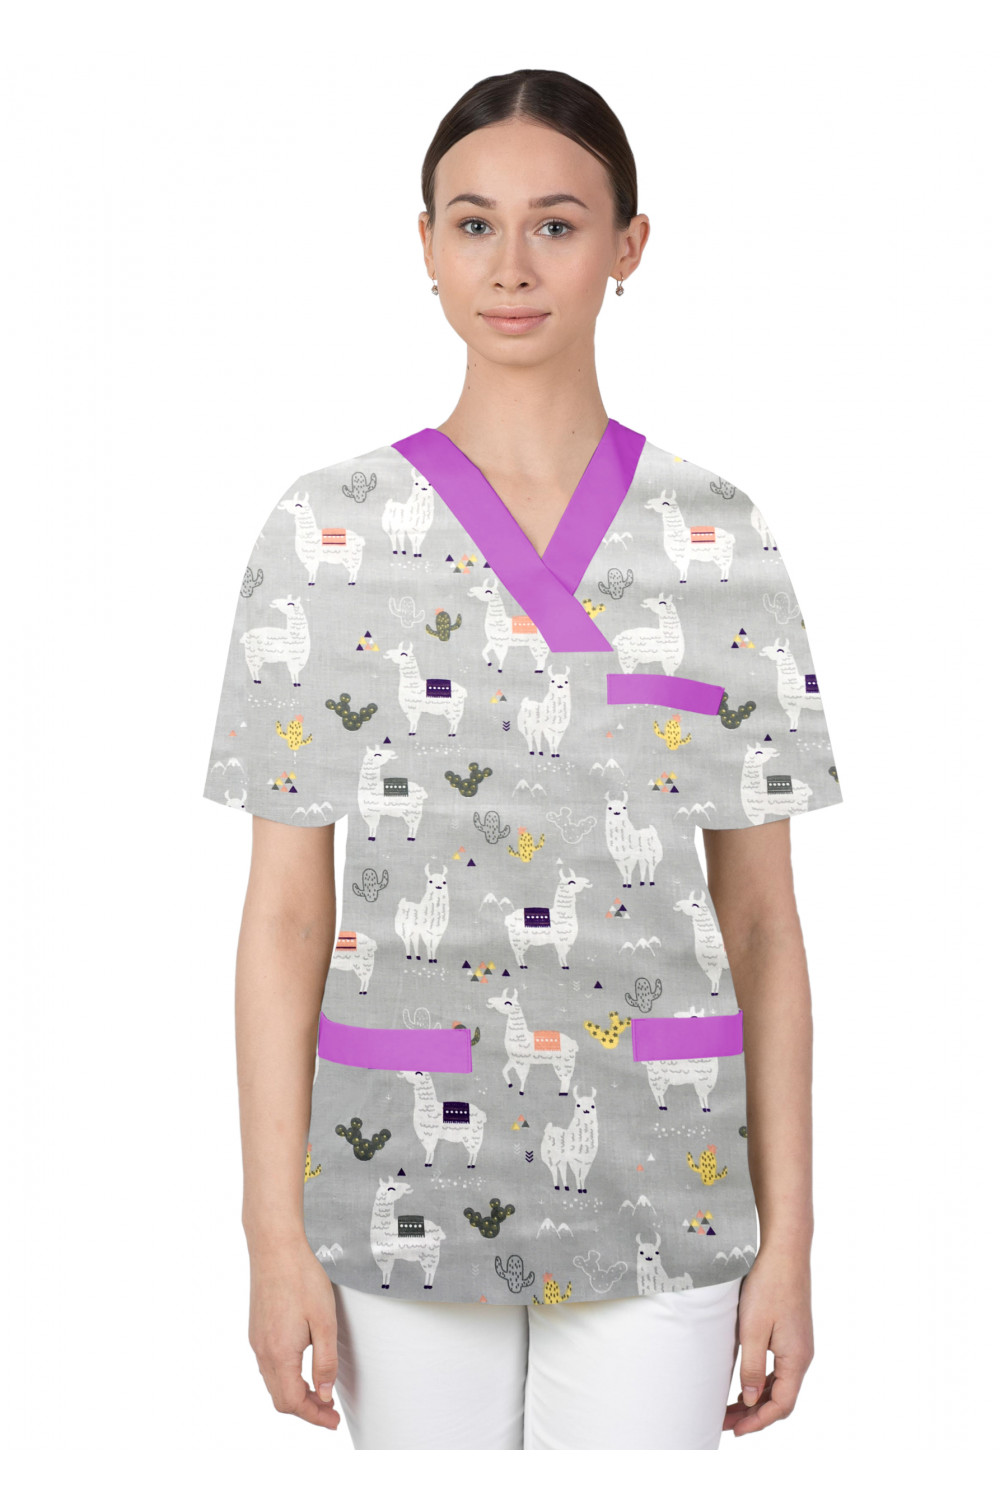 Bluza medyczna we wzorki kolorowa damska M-074G alpaki na szarym tle